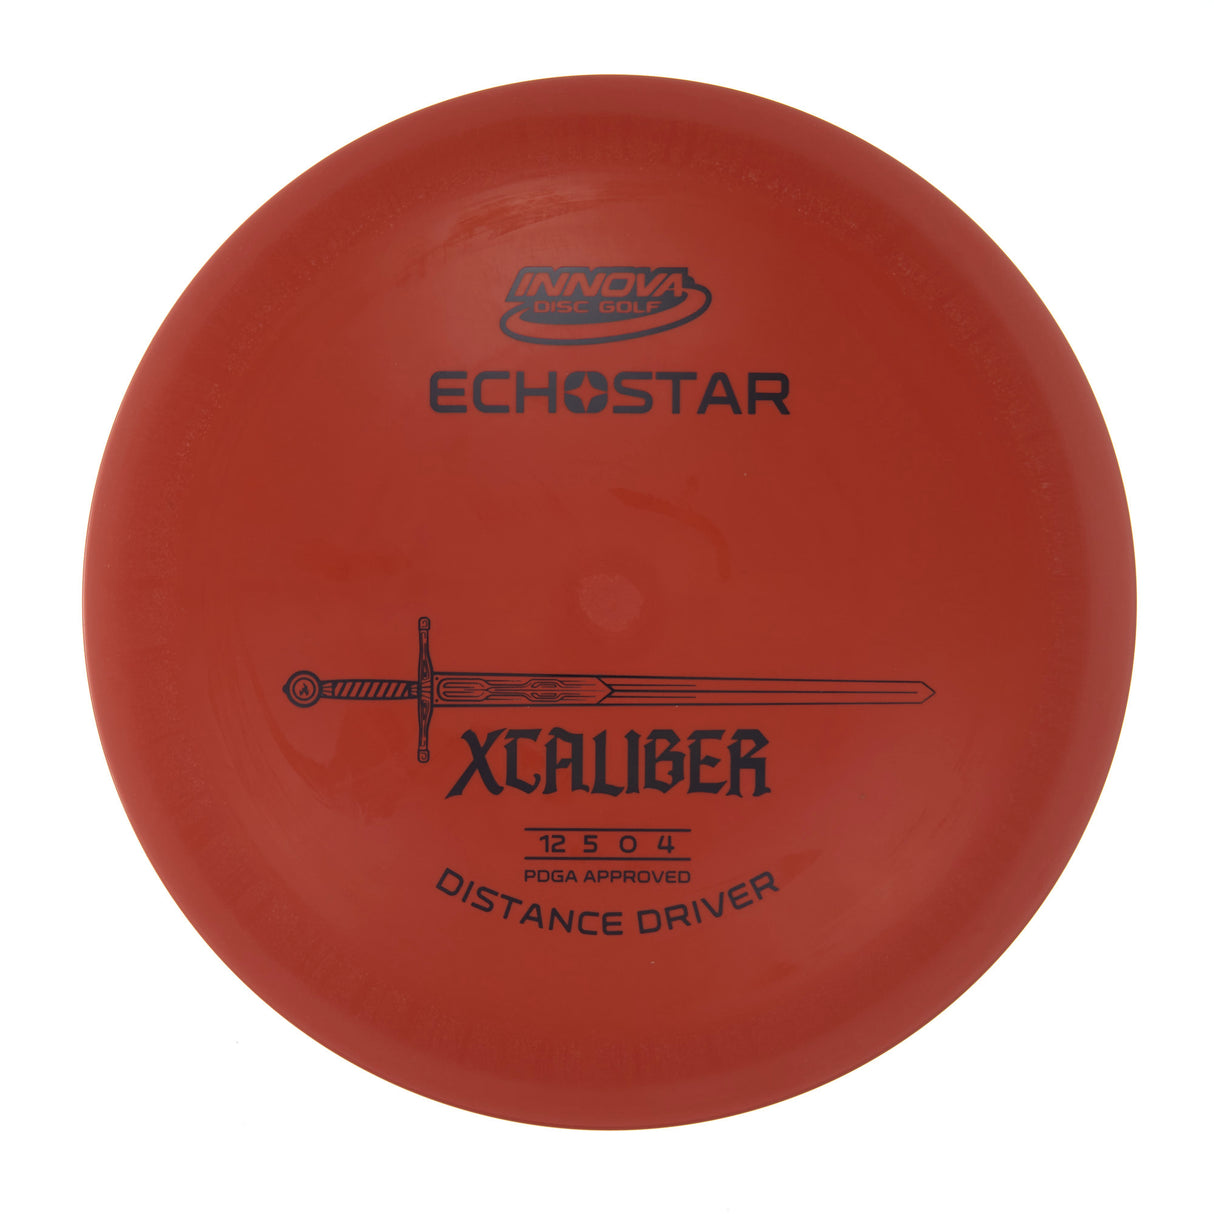 Innova XCaliber - Echo Star  173g | Style 0009